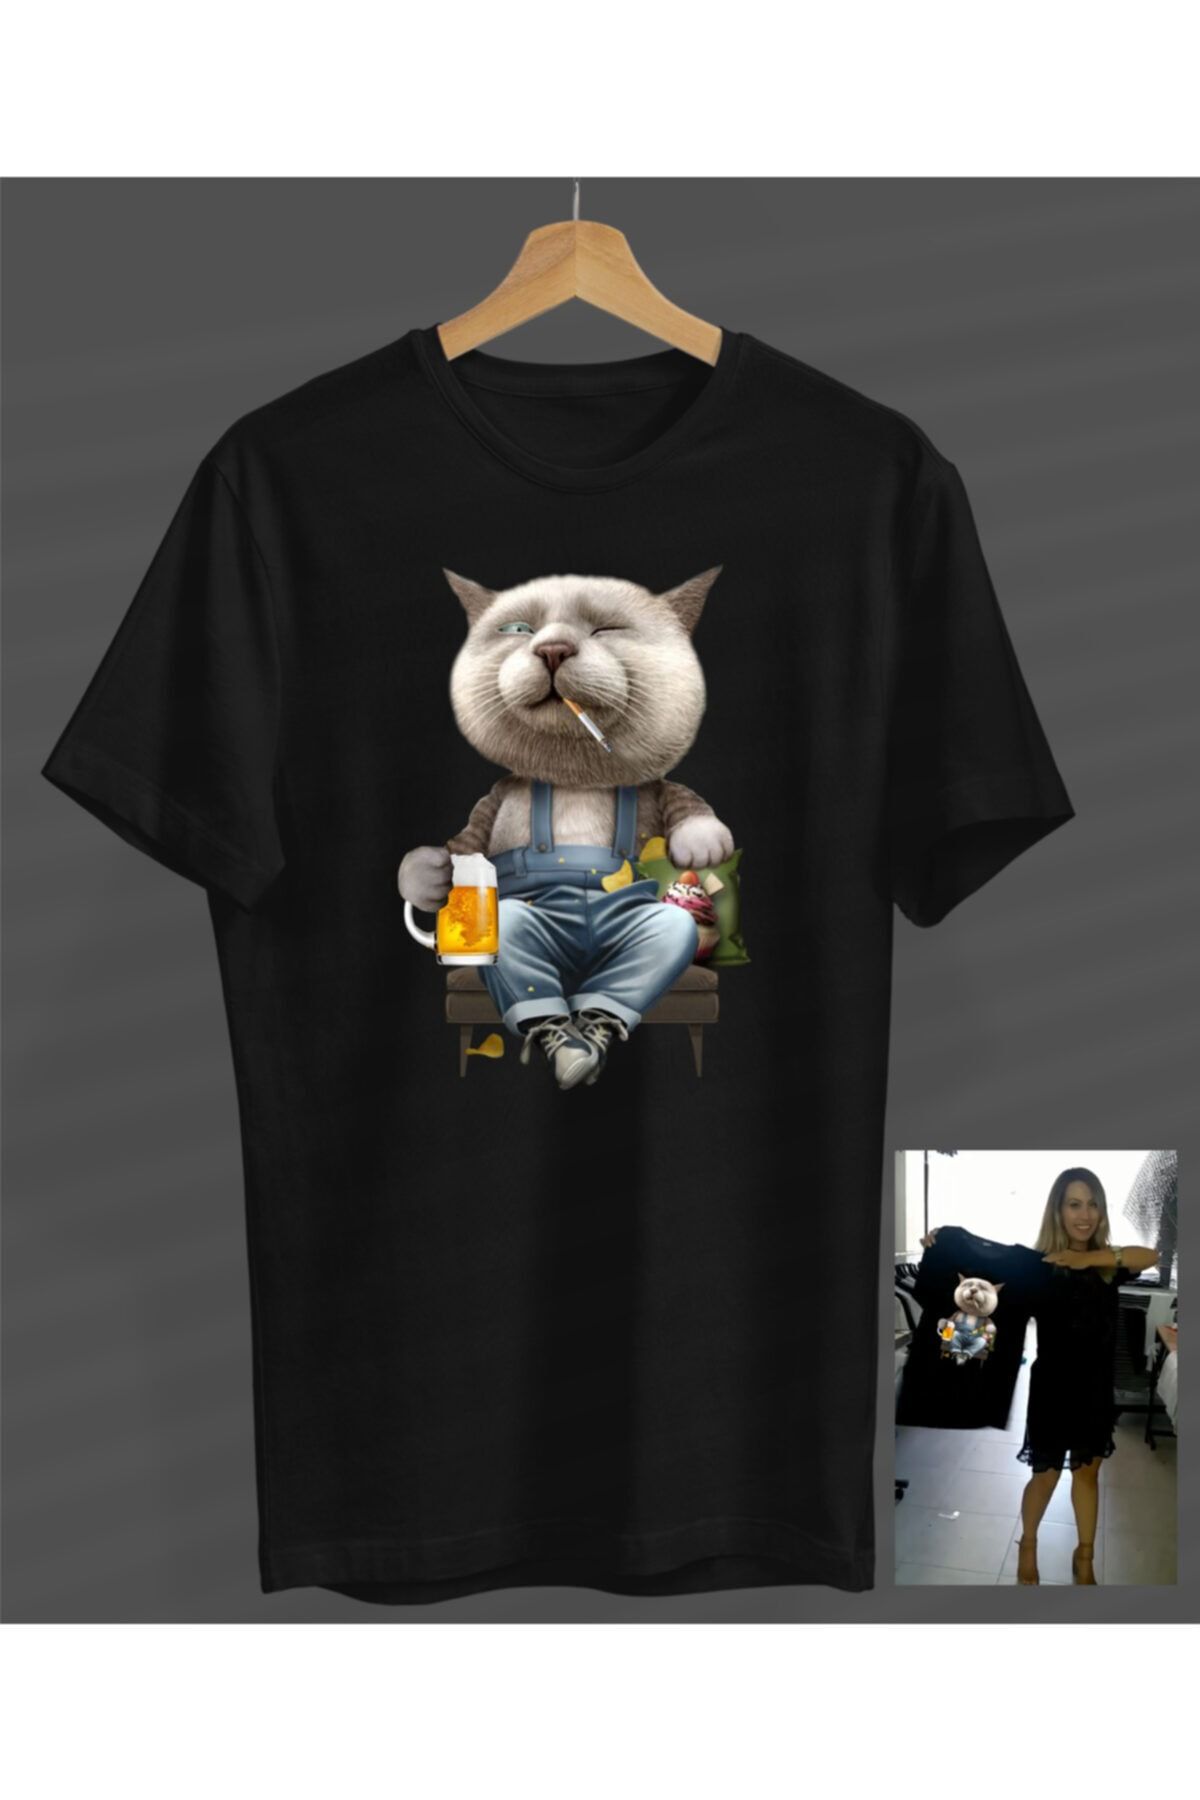 NOVUMUS Unisex Erkek-kadın Rahat Kedi Tasarım Siyah Yuvarlak Yaka T-shirt